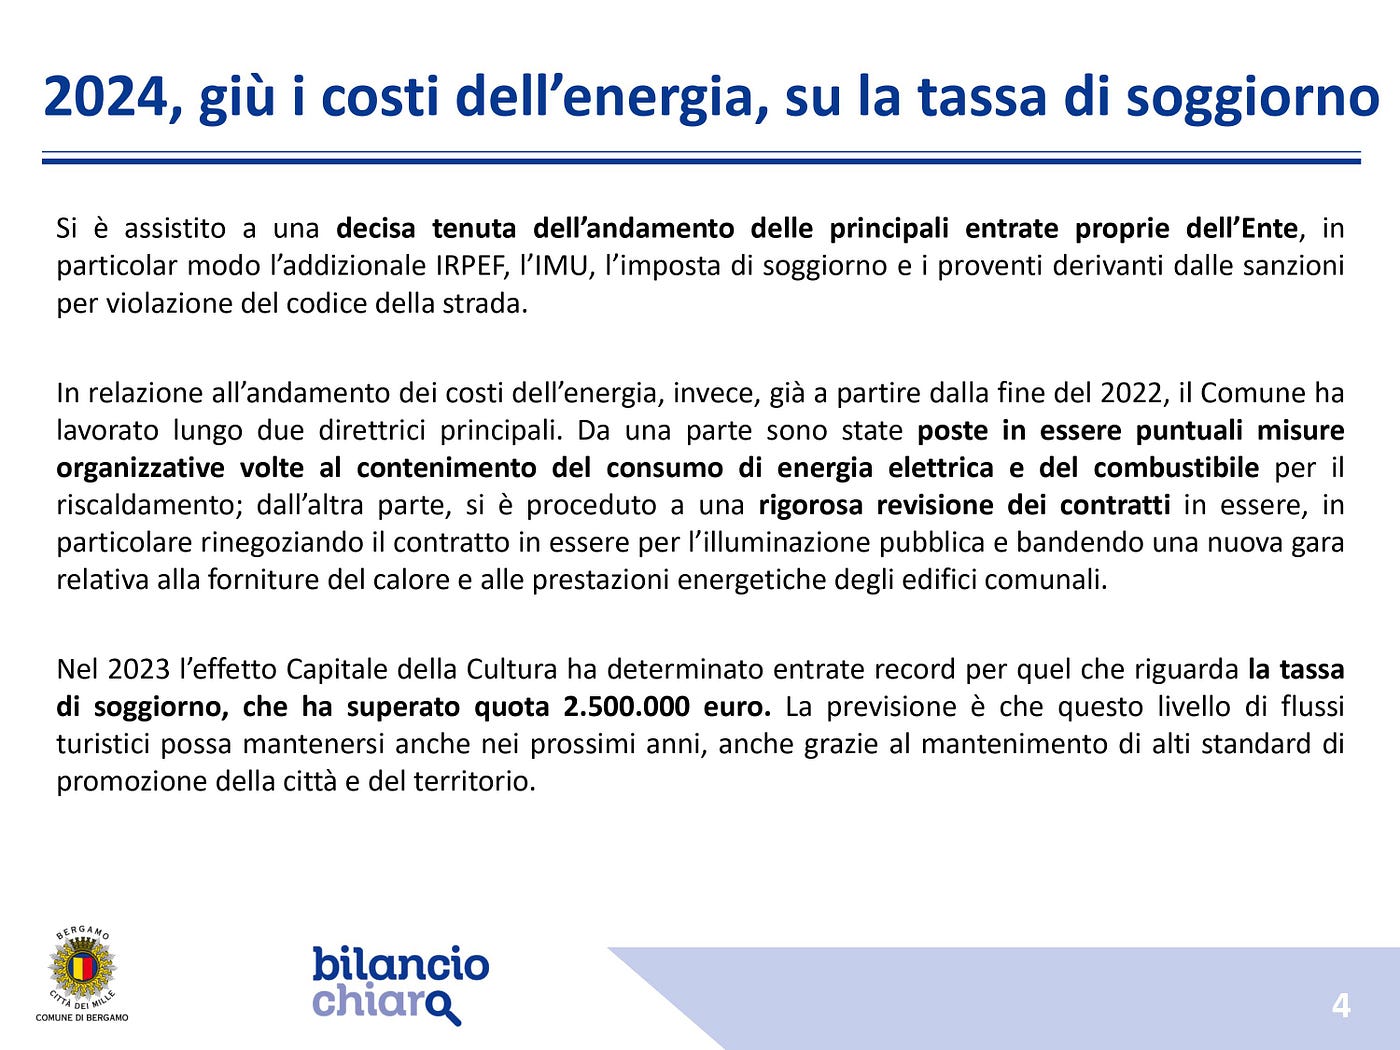 La Giunta approva il bilancio previsionale 2024: forte spinta degli  investimenti, 80milioni dal PNRR; effetto Capitale della Cultura, tassa di  soggiorno record | by Comune di Bergamo | Medium